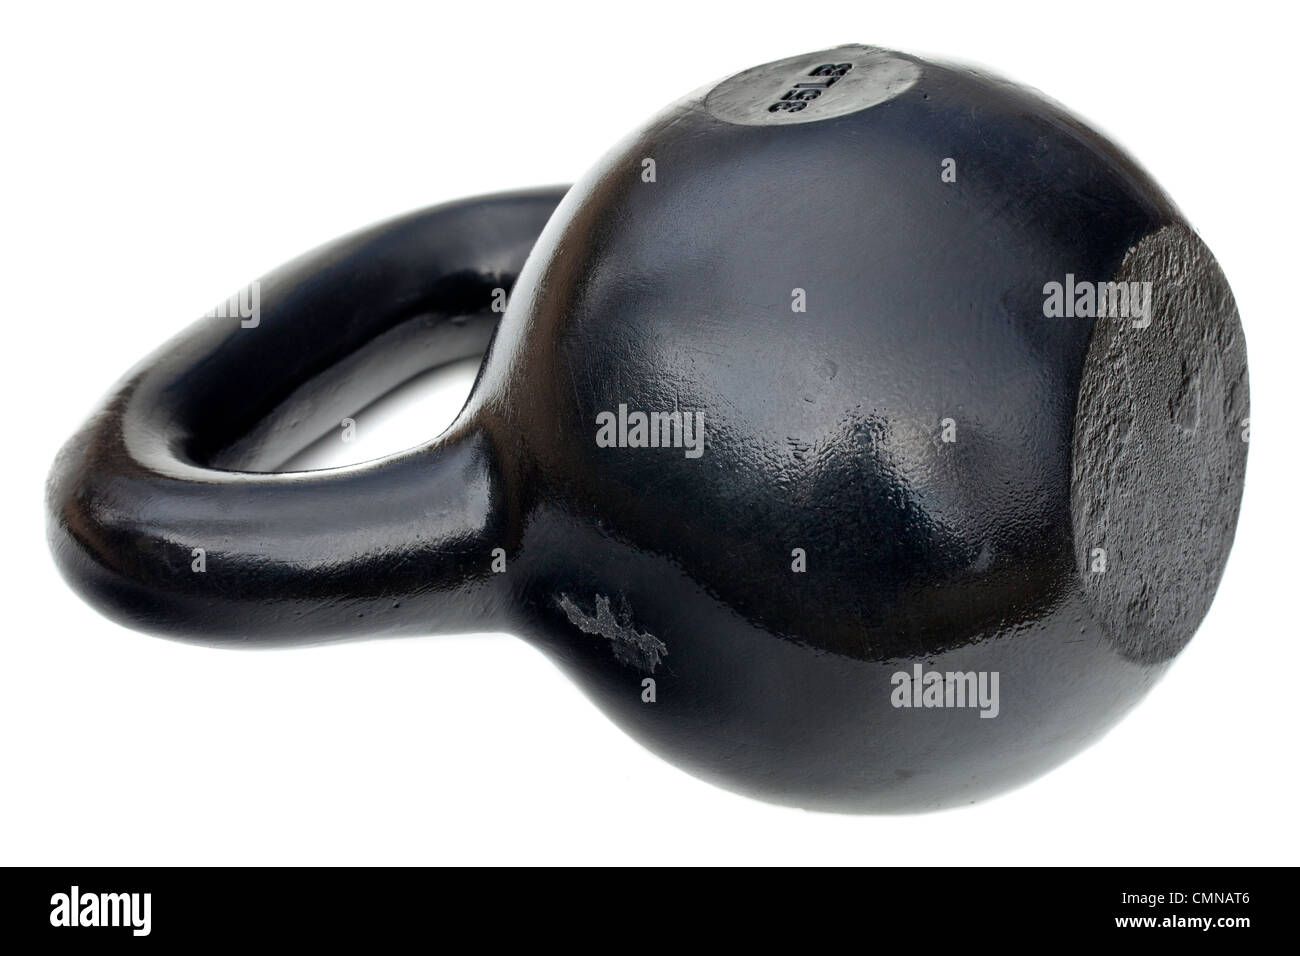 Brillant noir 35 lb pour l'haltérophilie et la fer kettlebell fitness training isolated on white Banque D'Images